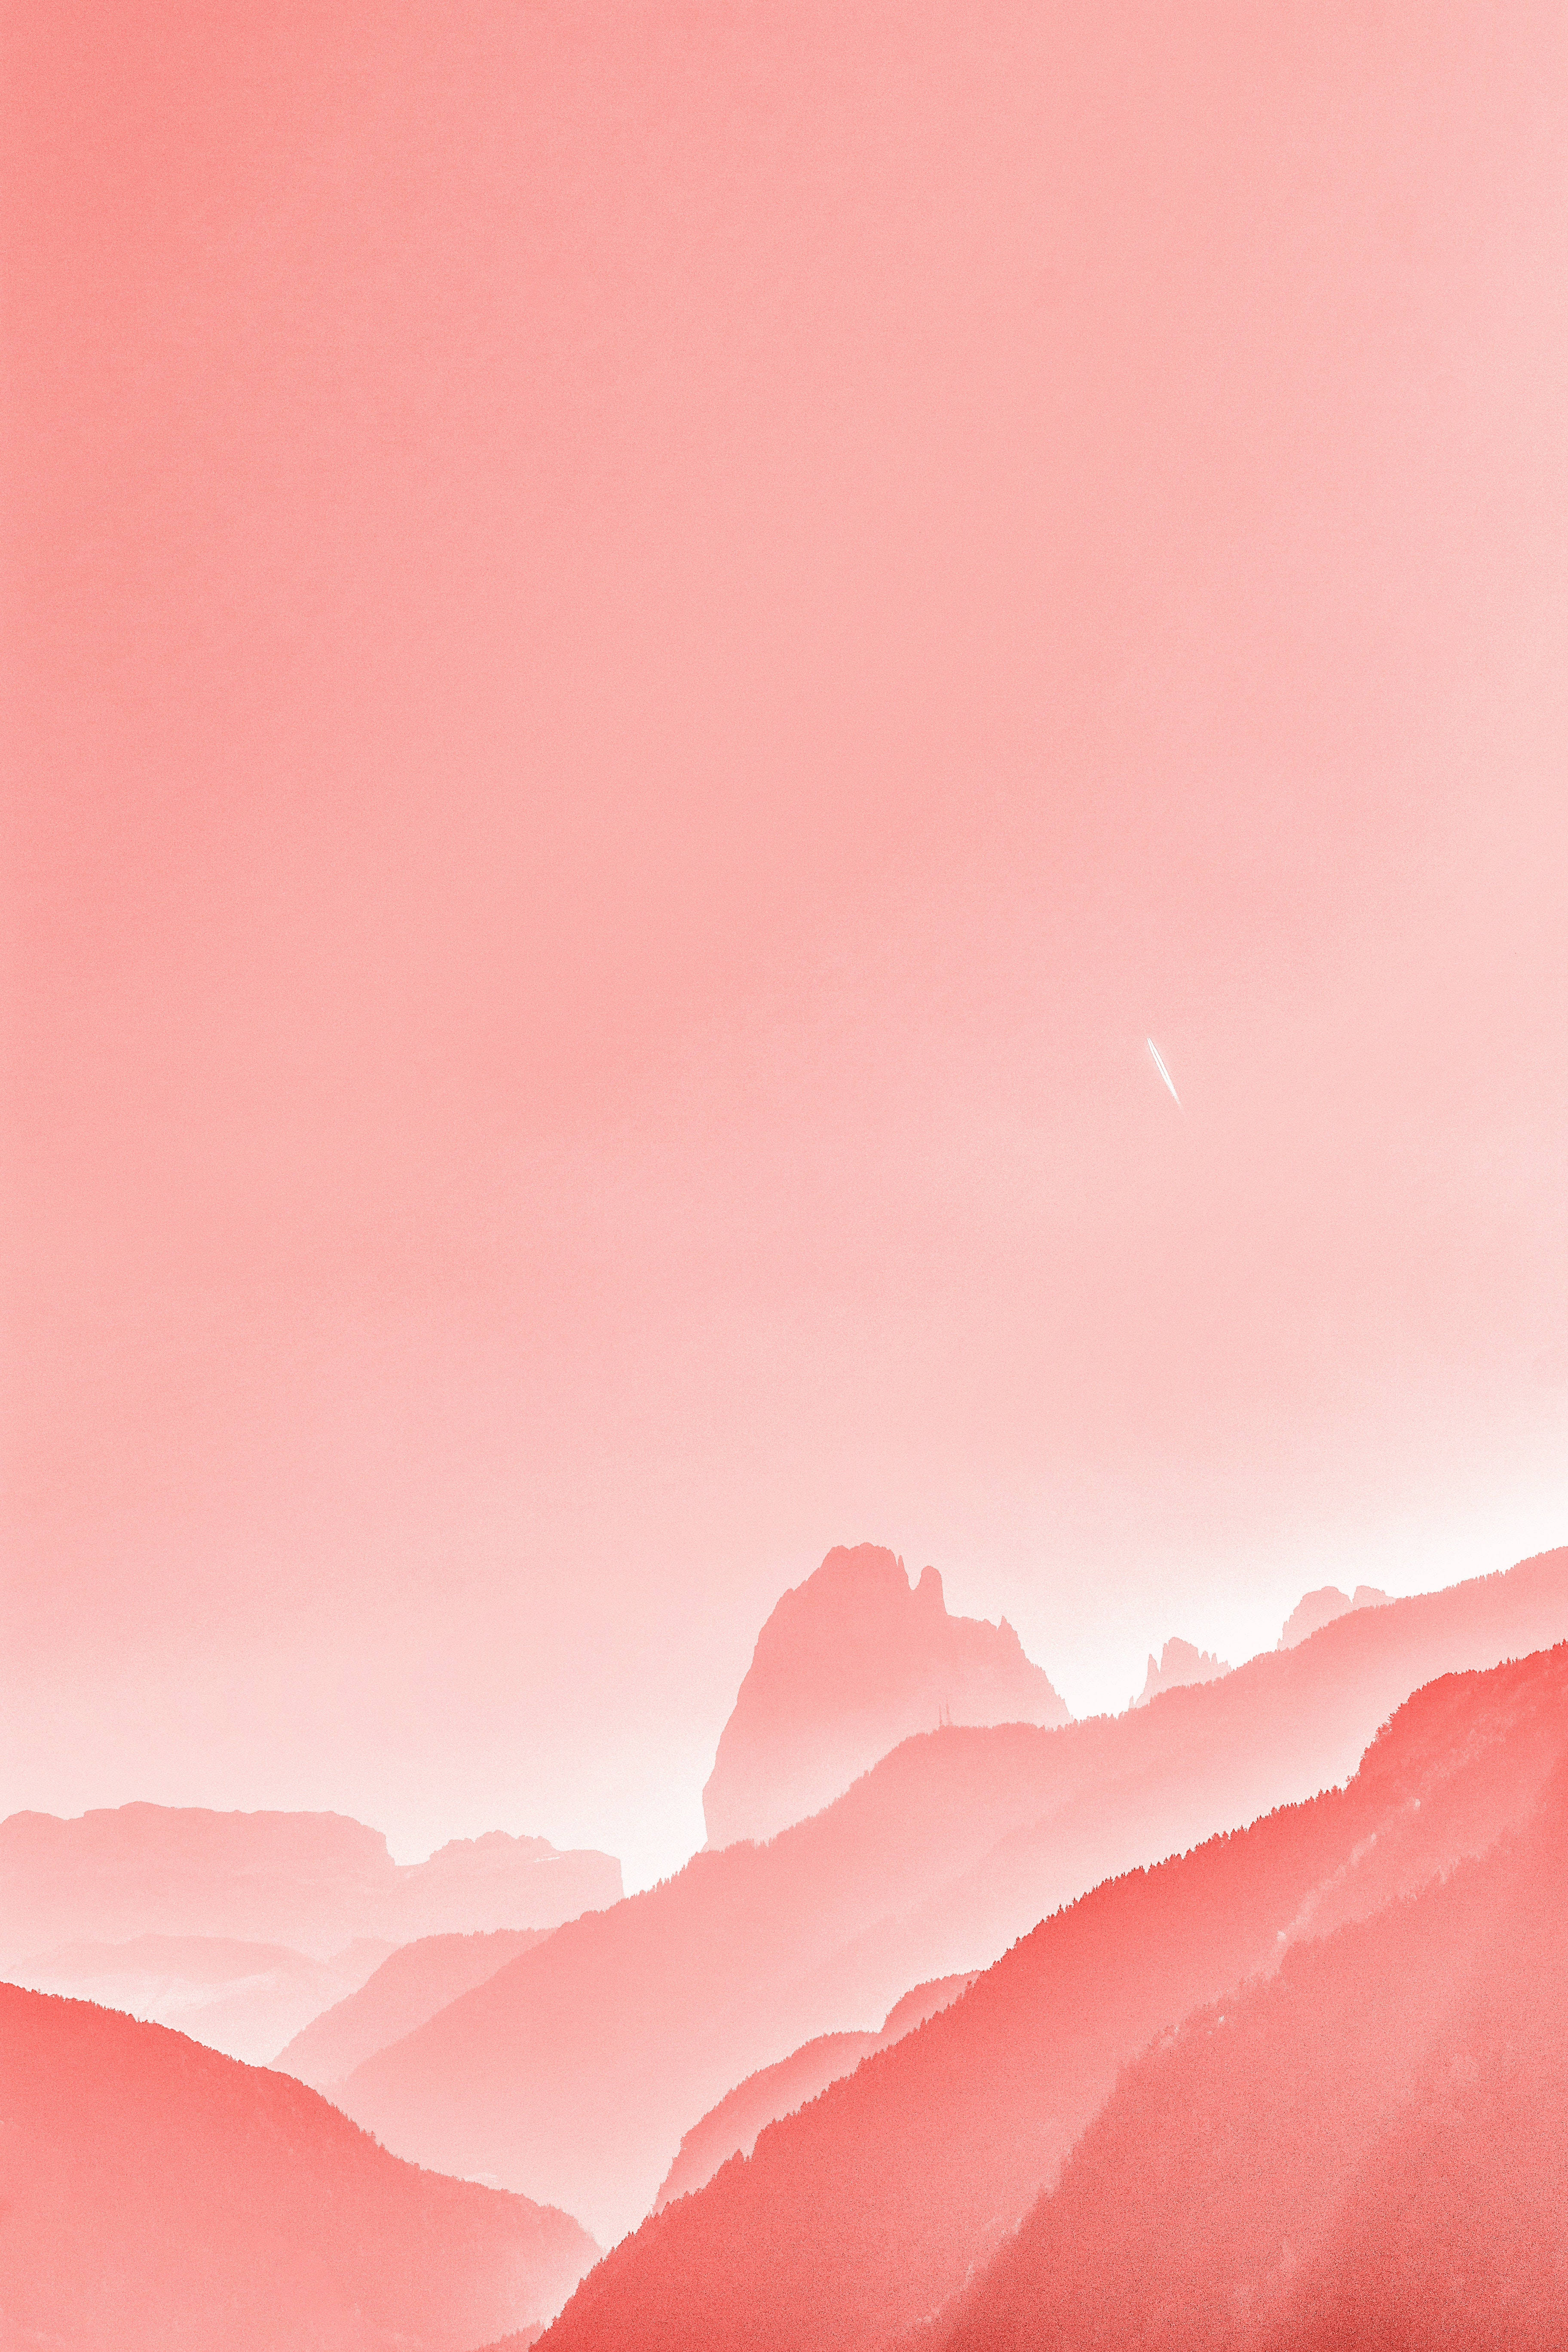 Pastel 4k Pink Mountain Wallpaper